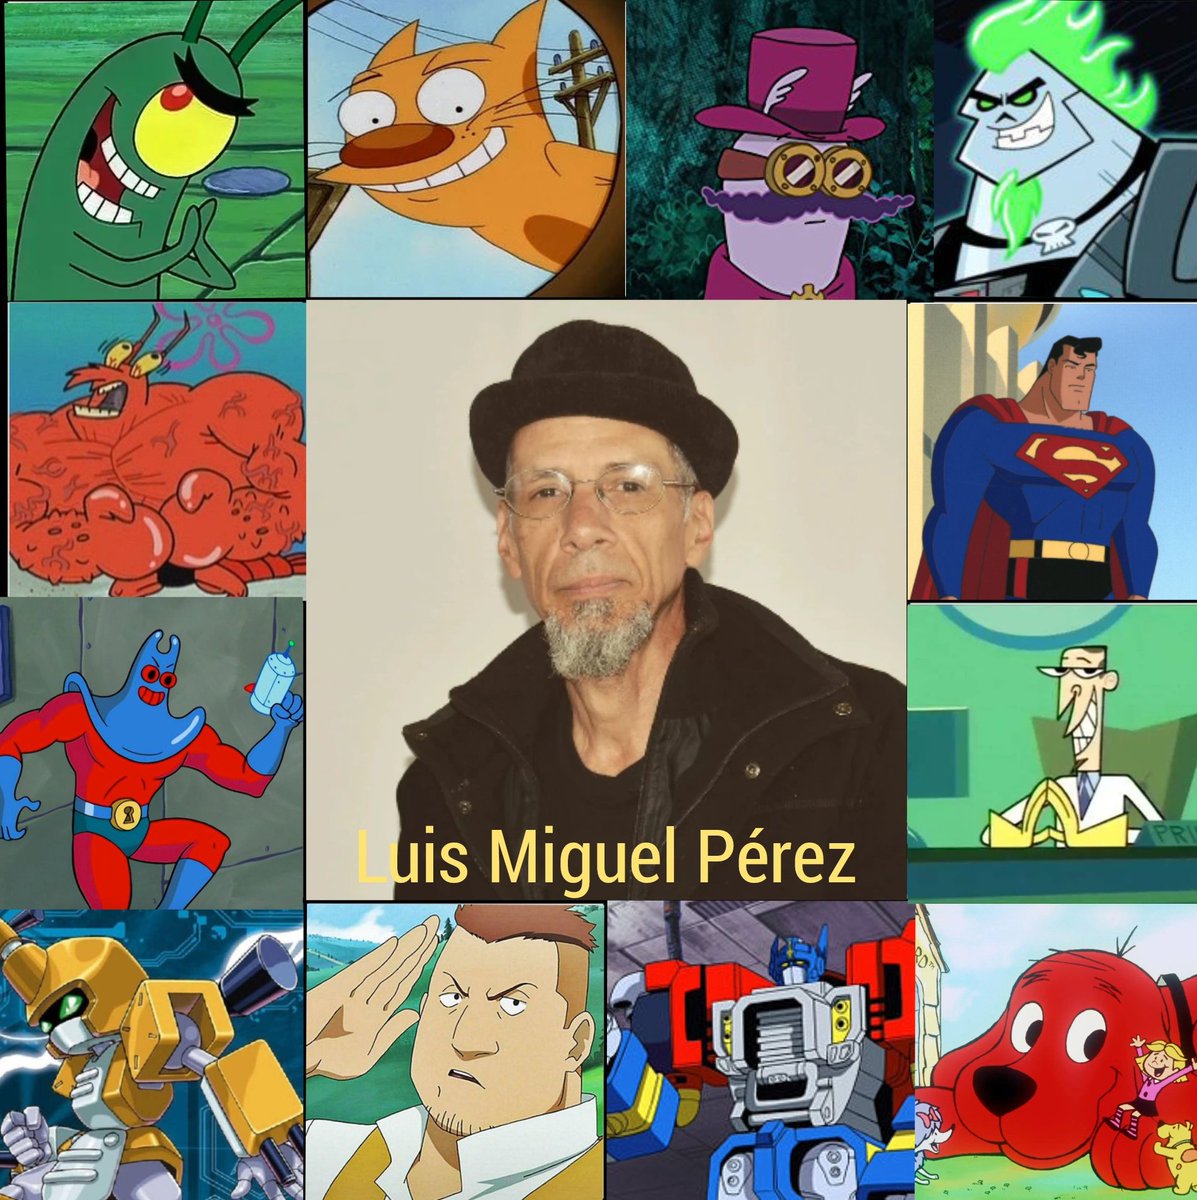 Collage dedicado al actor de doblaje venezolano Luis Miguel Pérez.
Conocido por ser la segunda voz de Plankton en Bob Esponja, así como de muchos otros personajes.

#25YearsOfSpongeBob